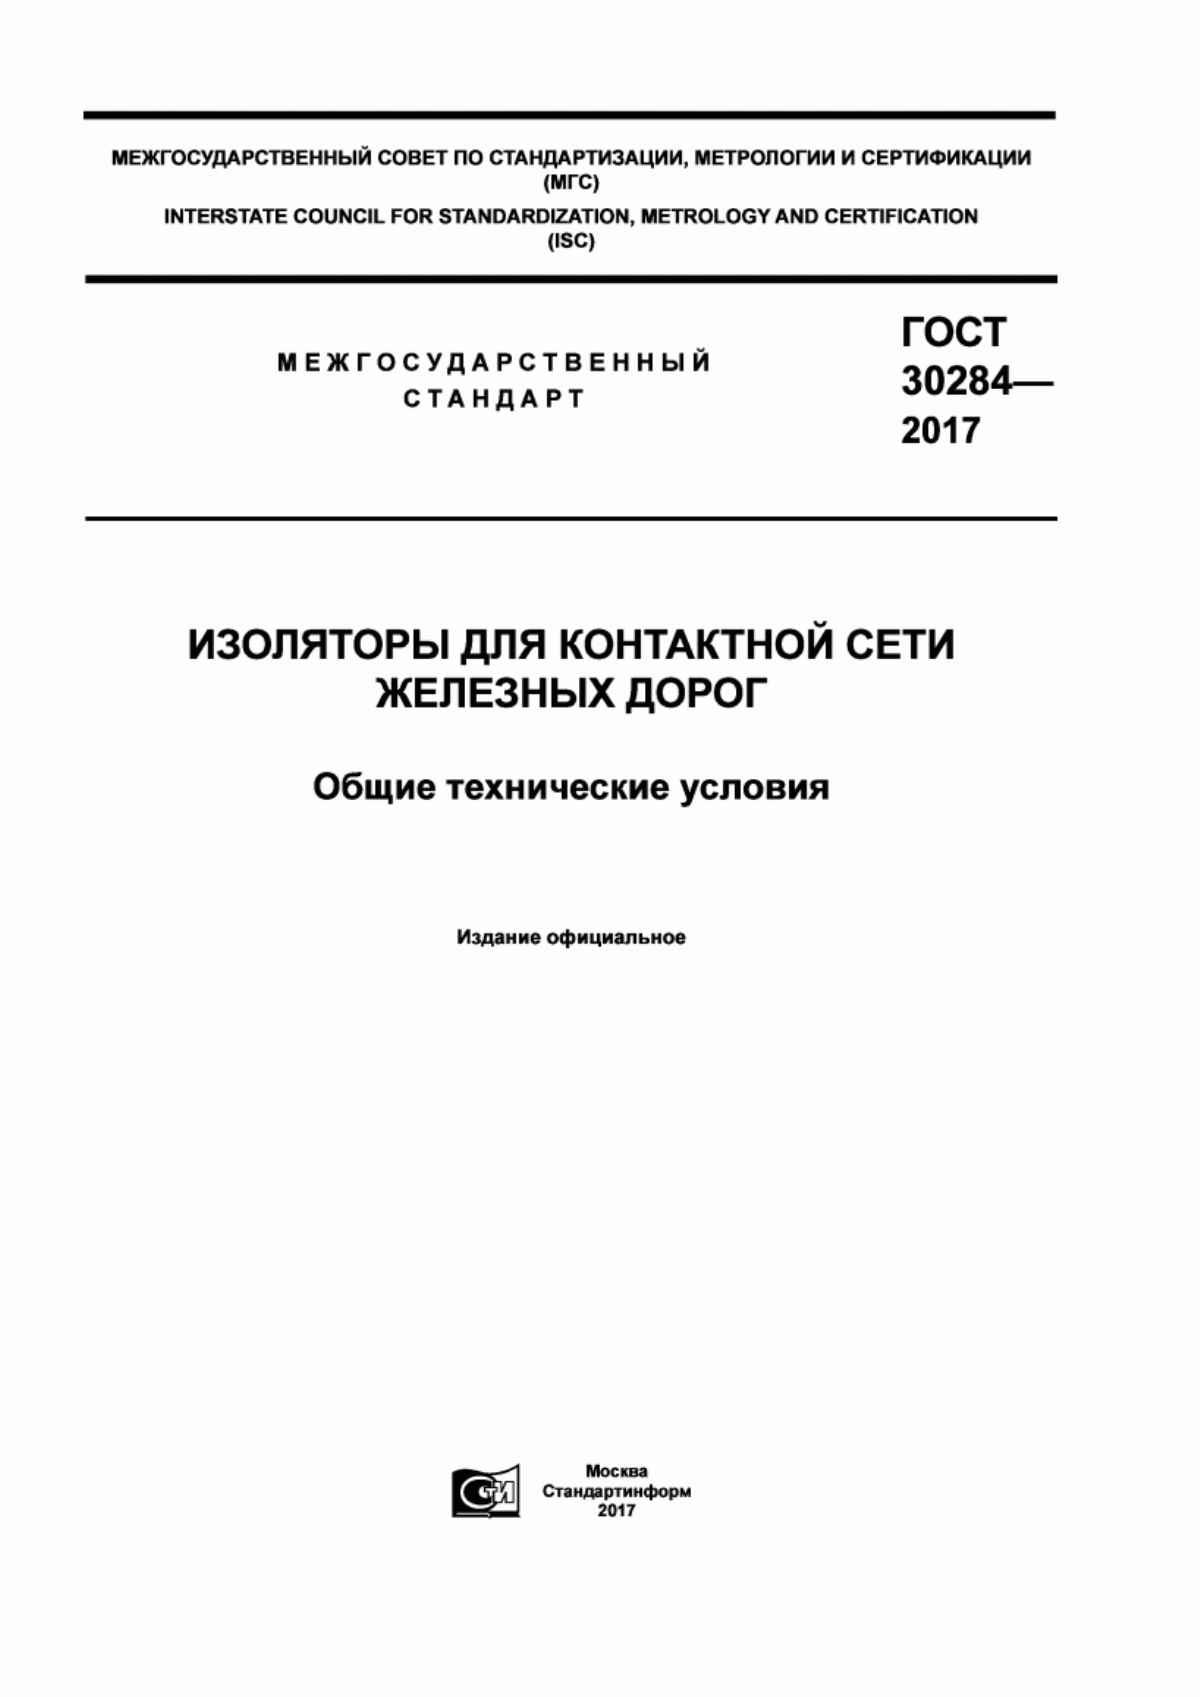 ГОСТ 30284-2017 Изоляторы для контактной сети железных дорог. Общие технические условия